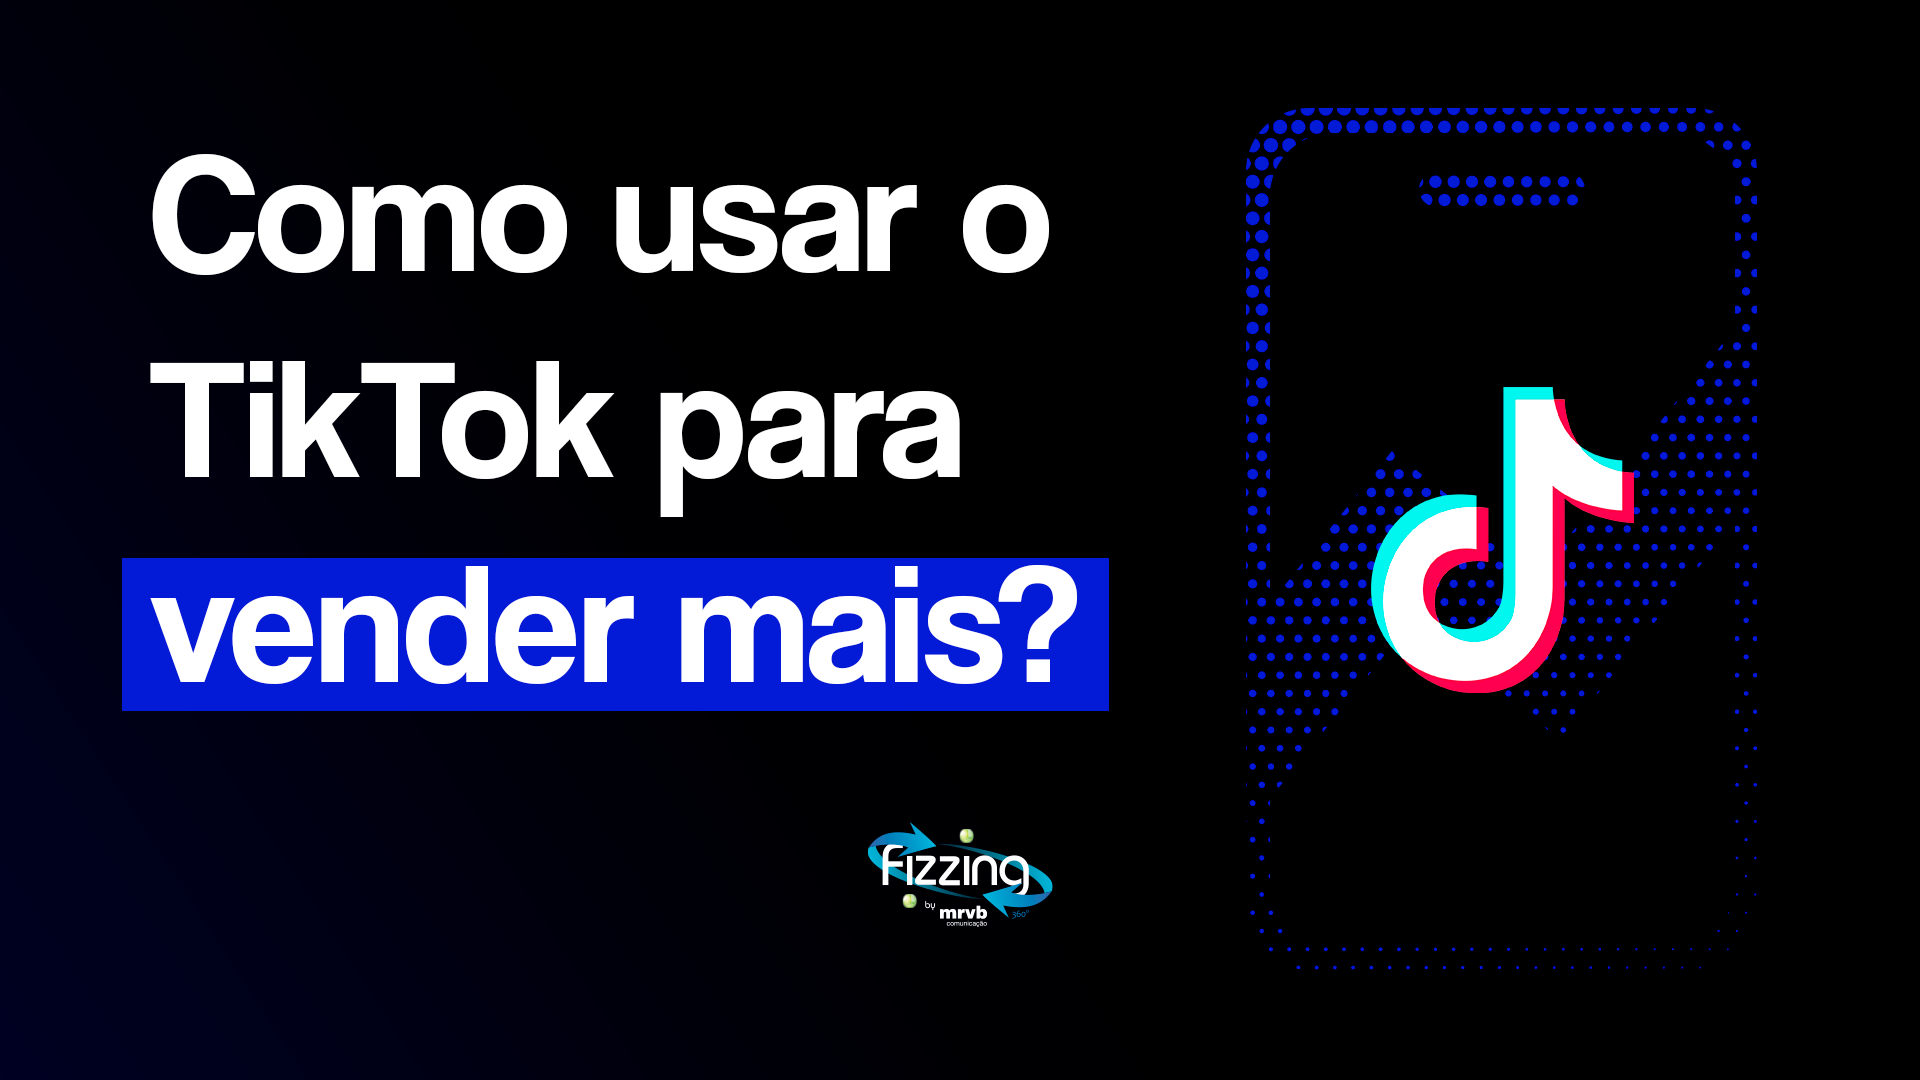 Capa com fundo preto e logo do TikTok, contendo o seguinte texto: Como usar o TikTok para vender mais?